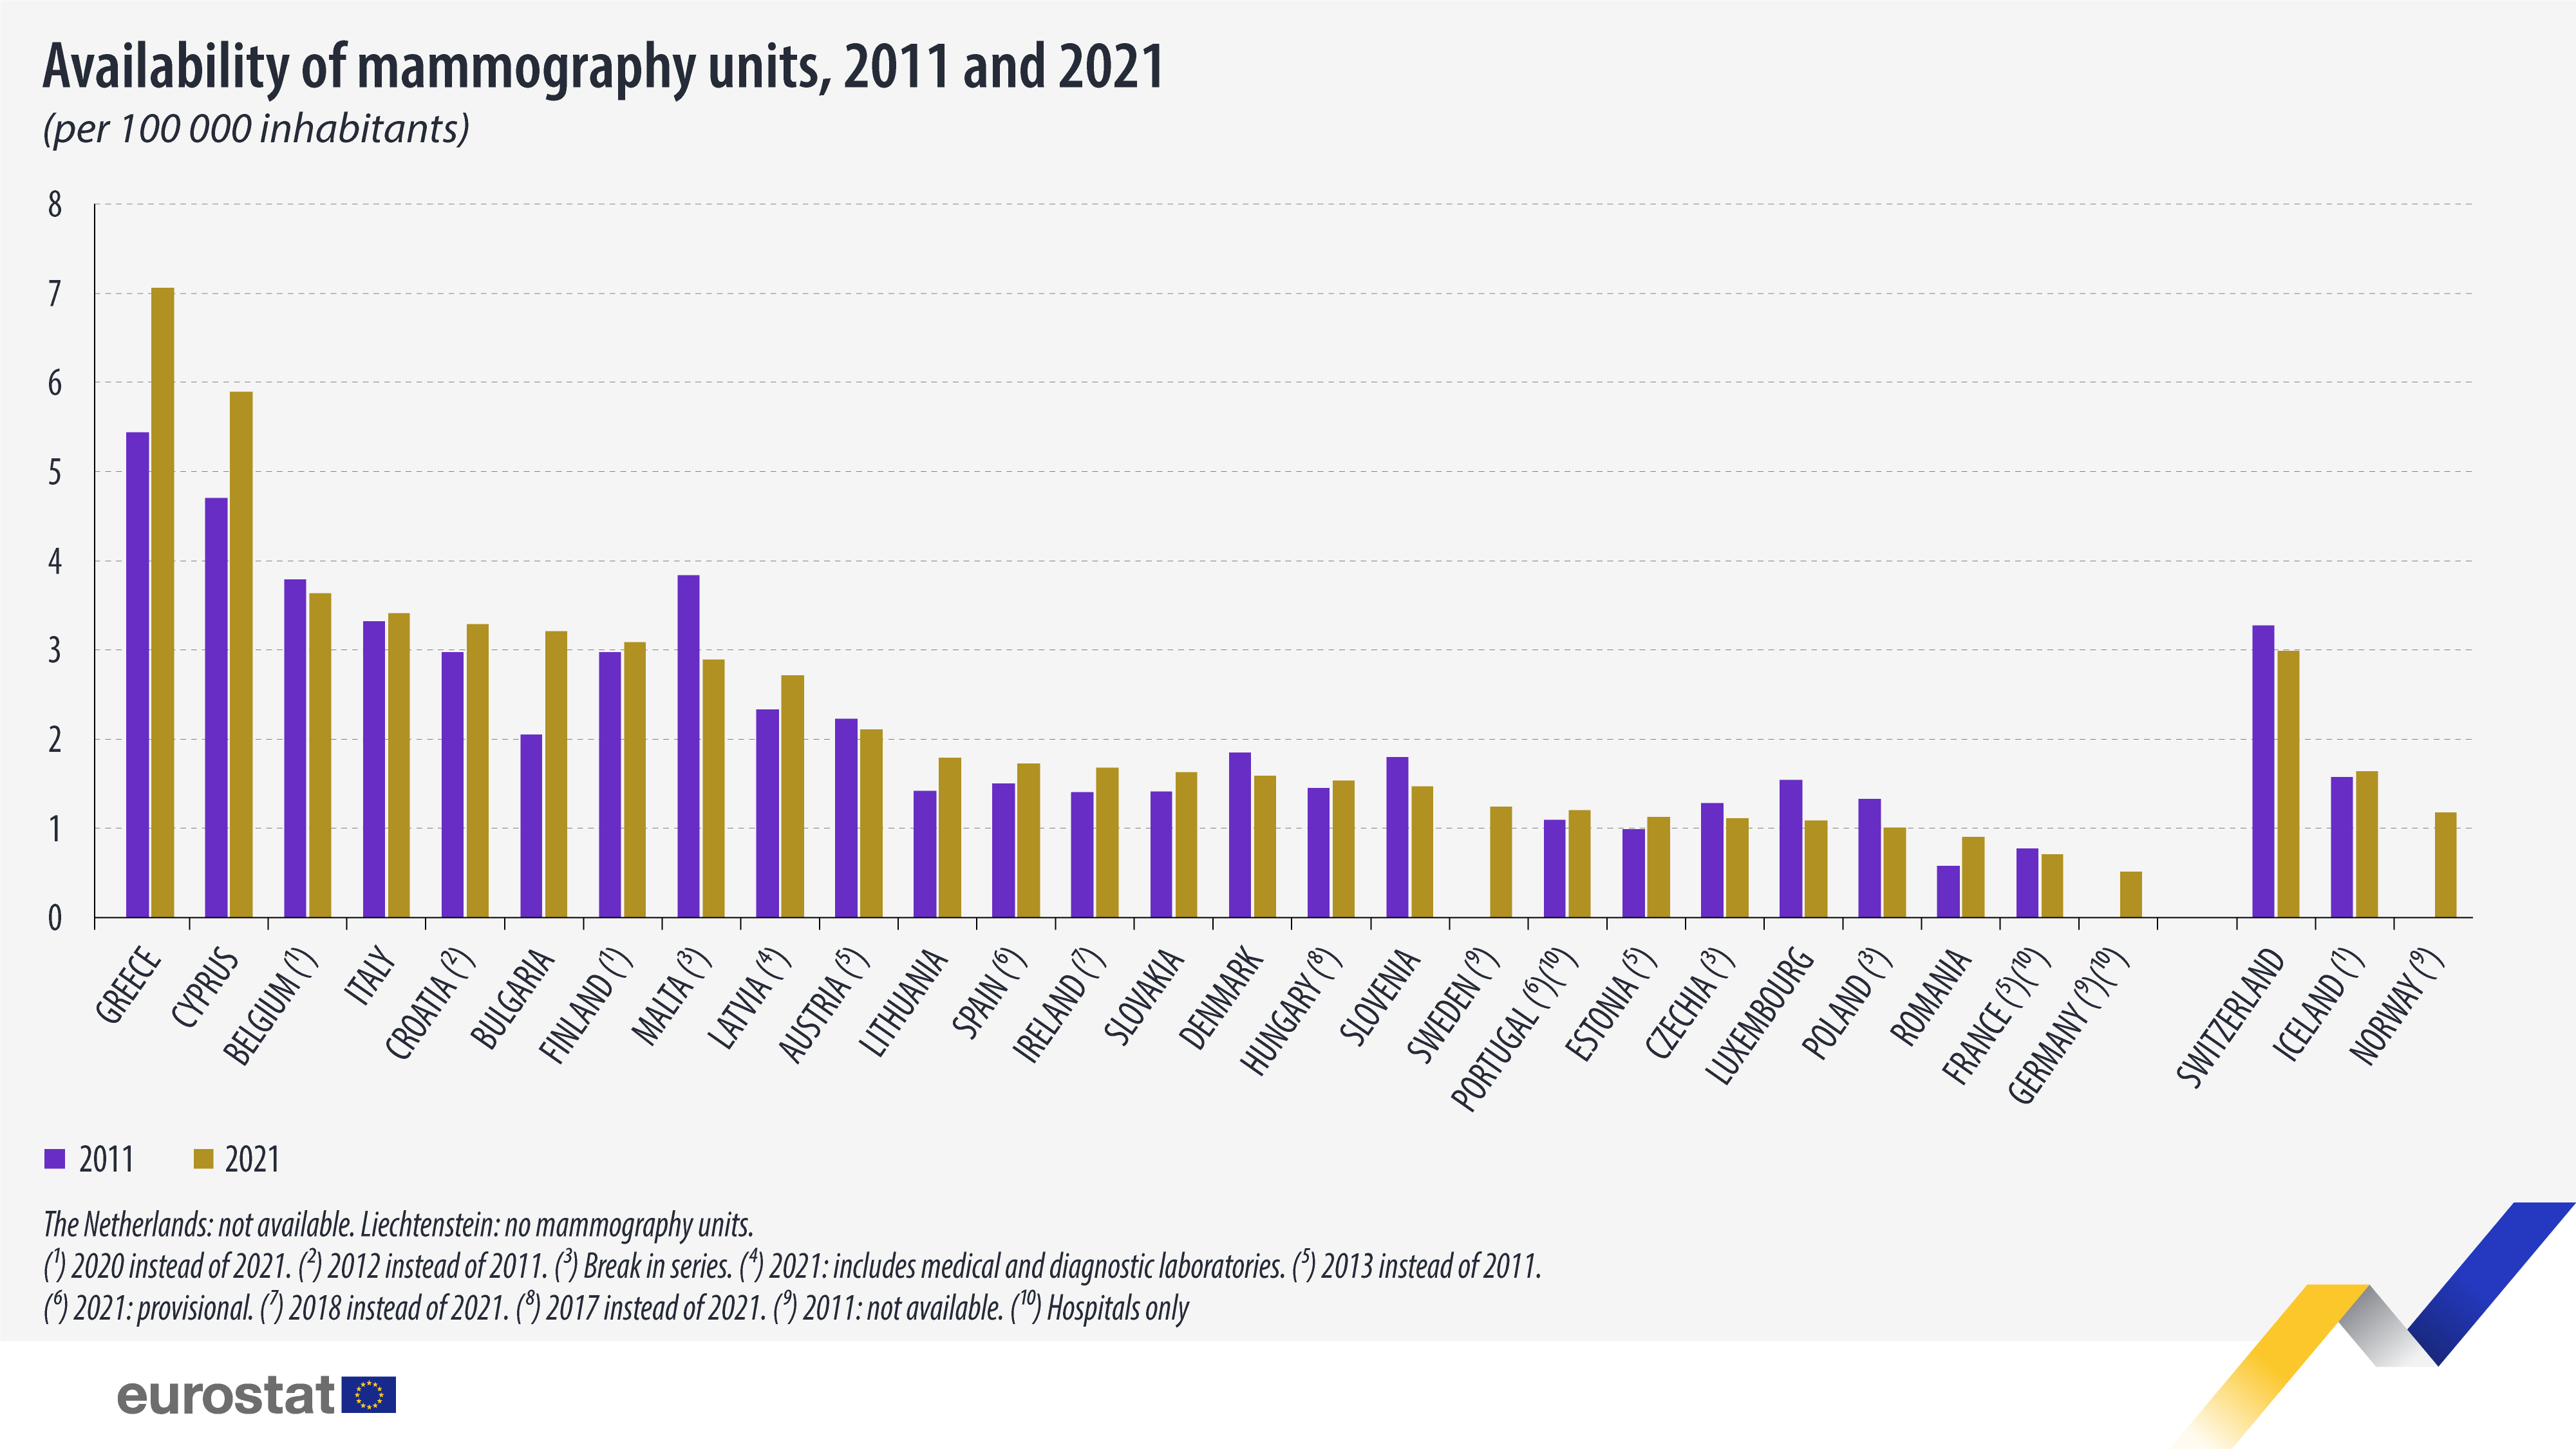 Pylväskaavio: Mammografiayksiköiden saatavuus 100 000 asukasta kohti, 2011 ja 2021